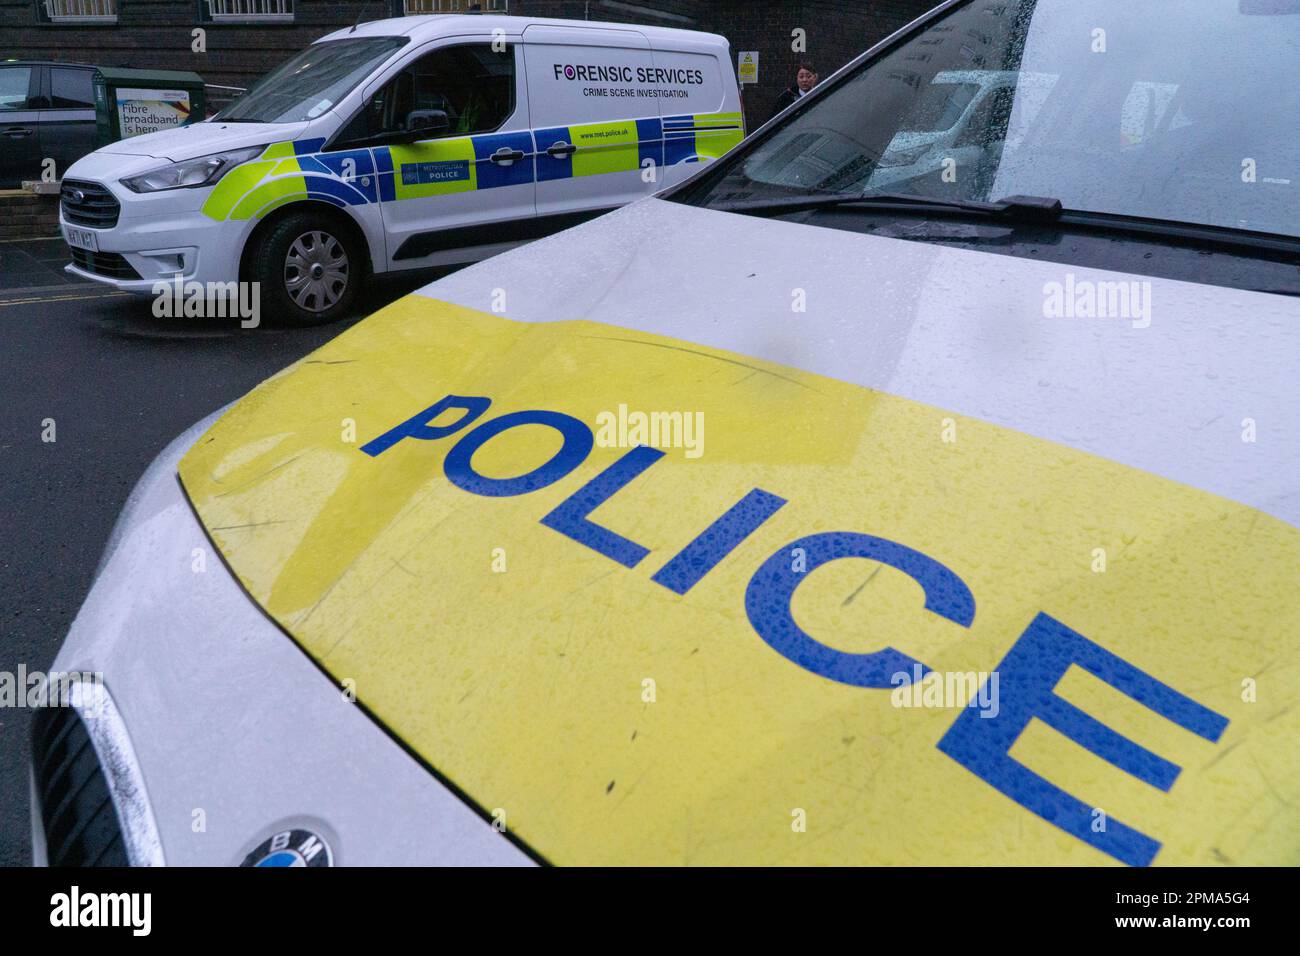 Londres, Royaume-Uni, 11 avril 2023 : voitures de police métropolitaines, y compris une fourgonnette desservant l'unité d'investigation, garées à l'extérieur du poste de police de Brixton dans le sud de Londres. Anna Watson/Alay Live News Banque D'Images